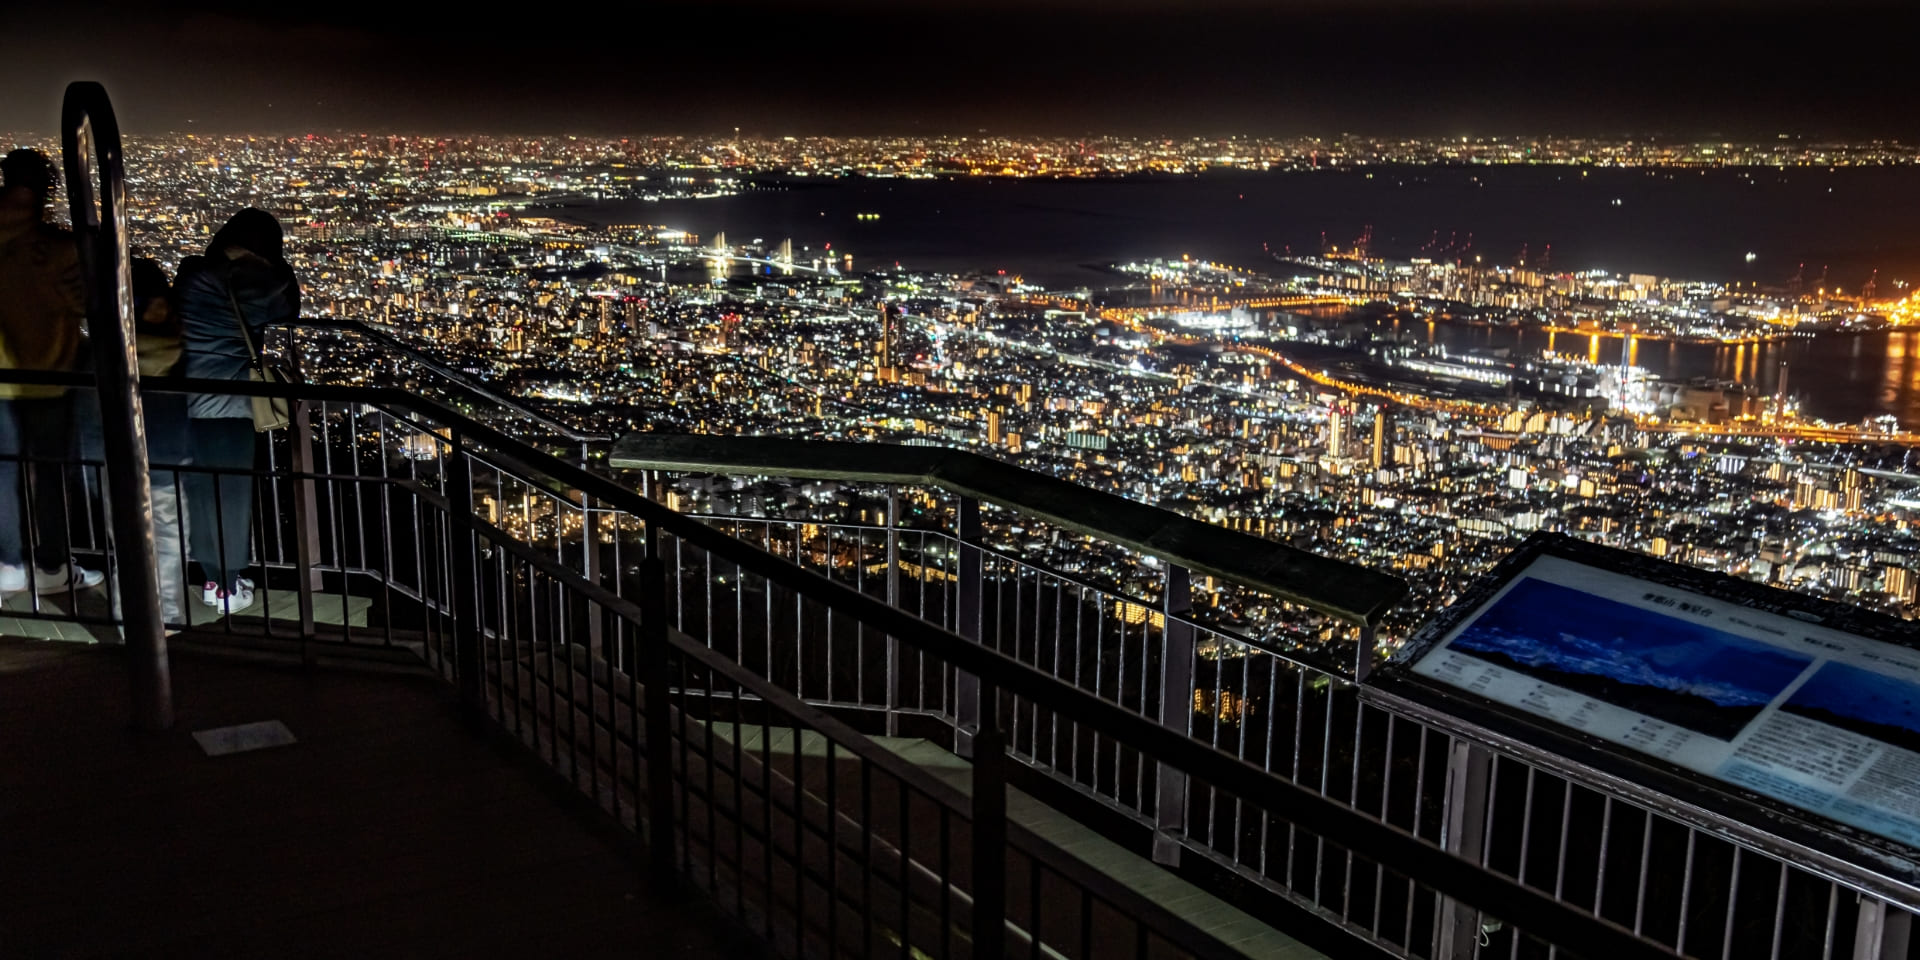 摩耶山 掬星台從日本三大夜景觀賞到的價值1000萬美元的夜景摩耶山掬星台